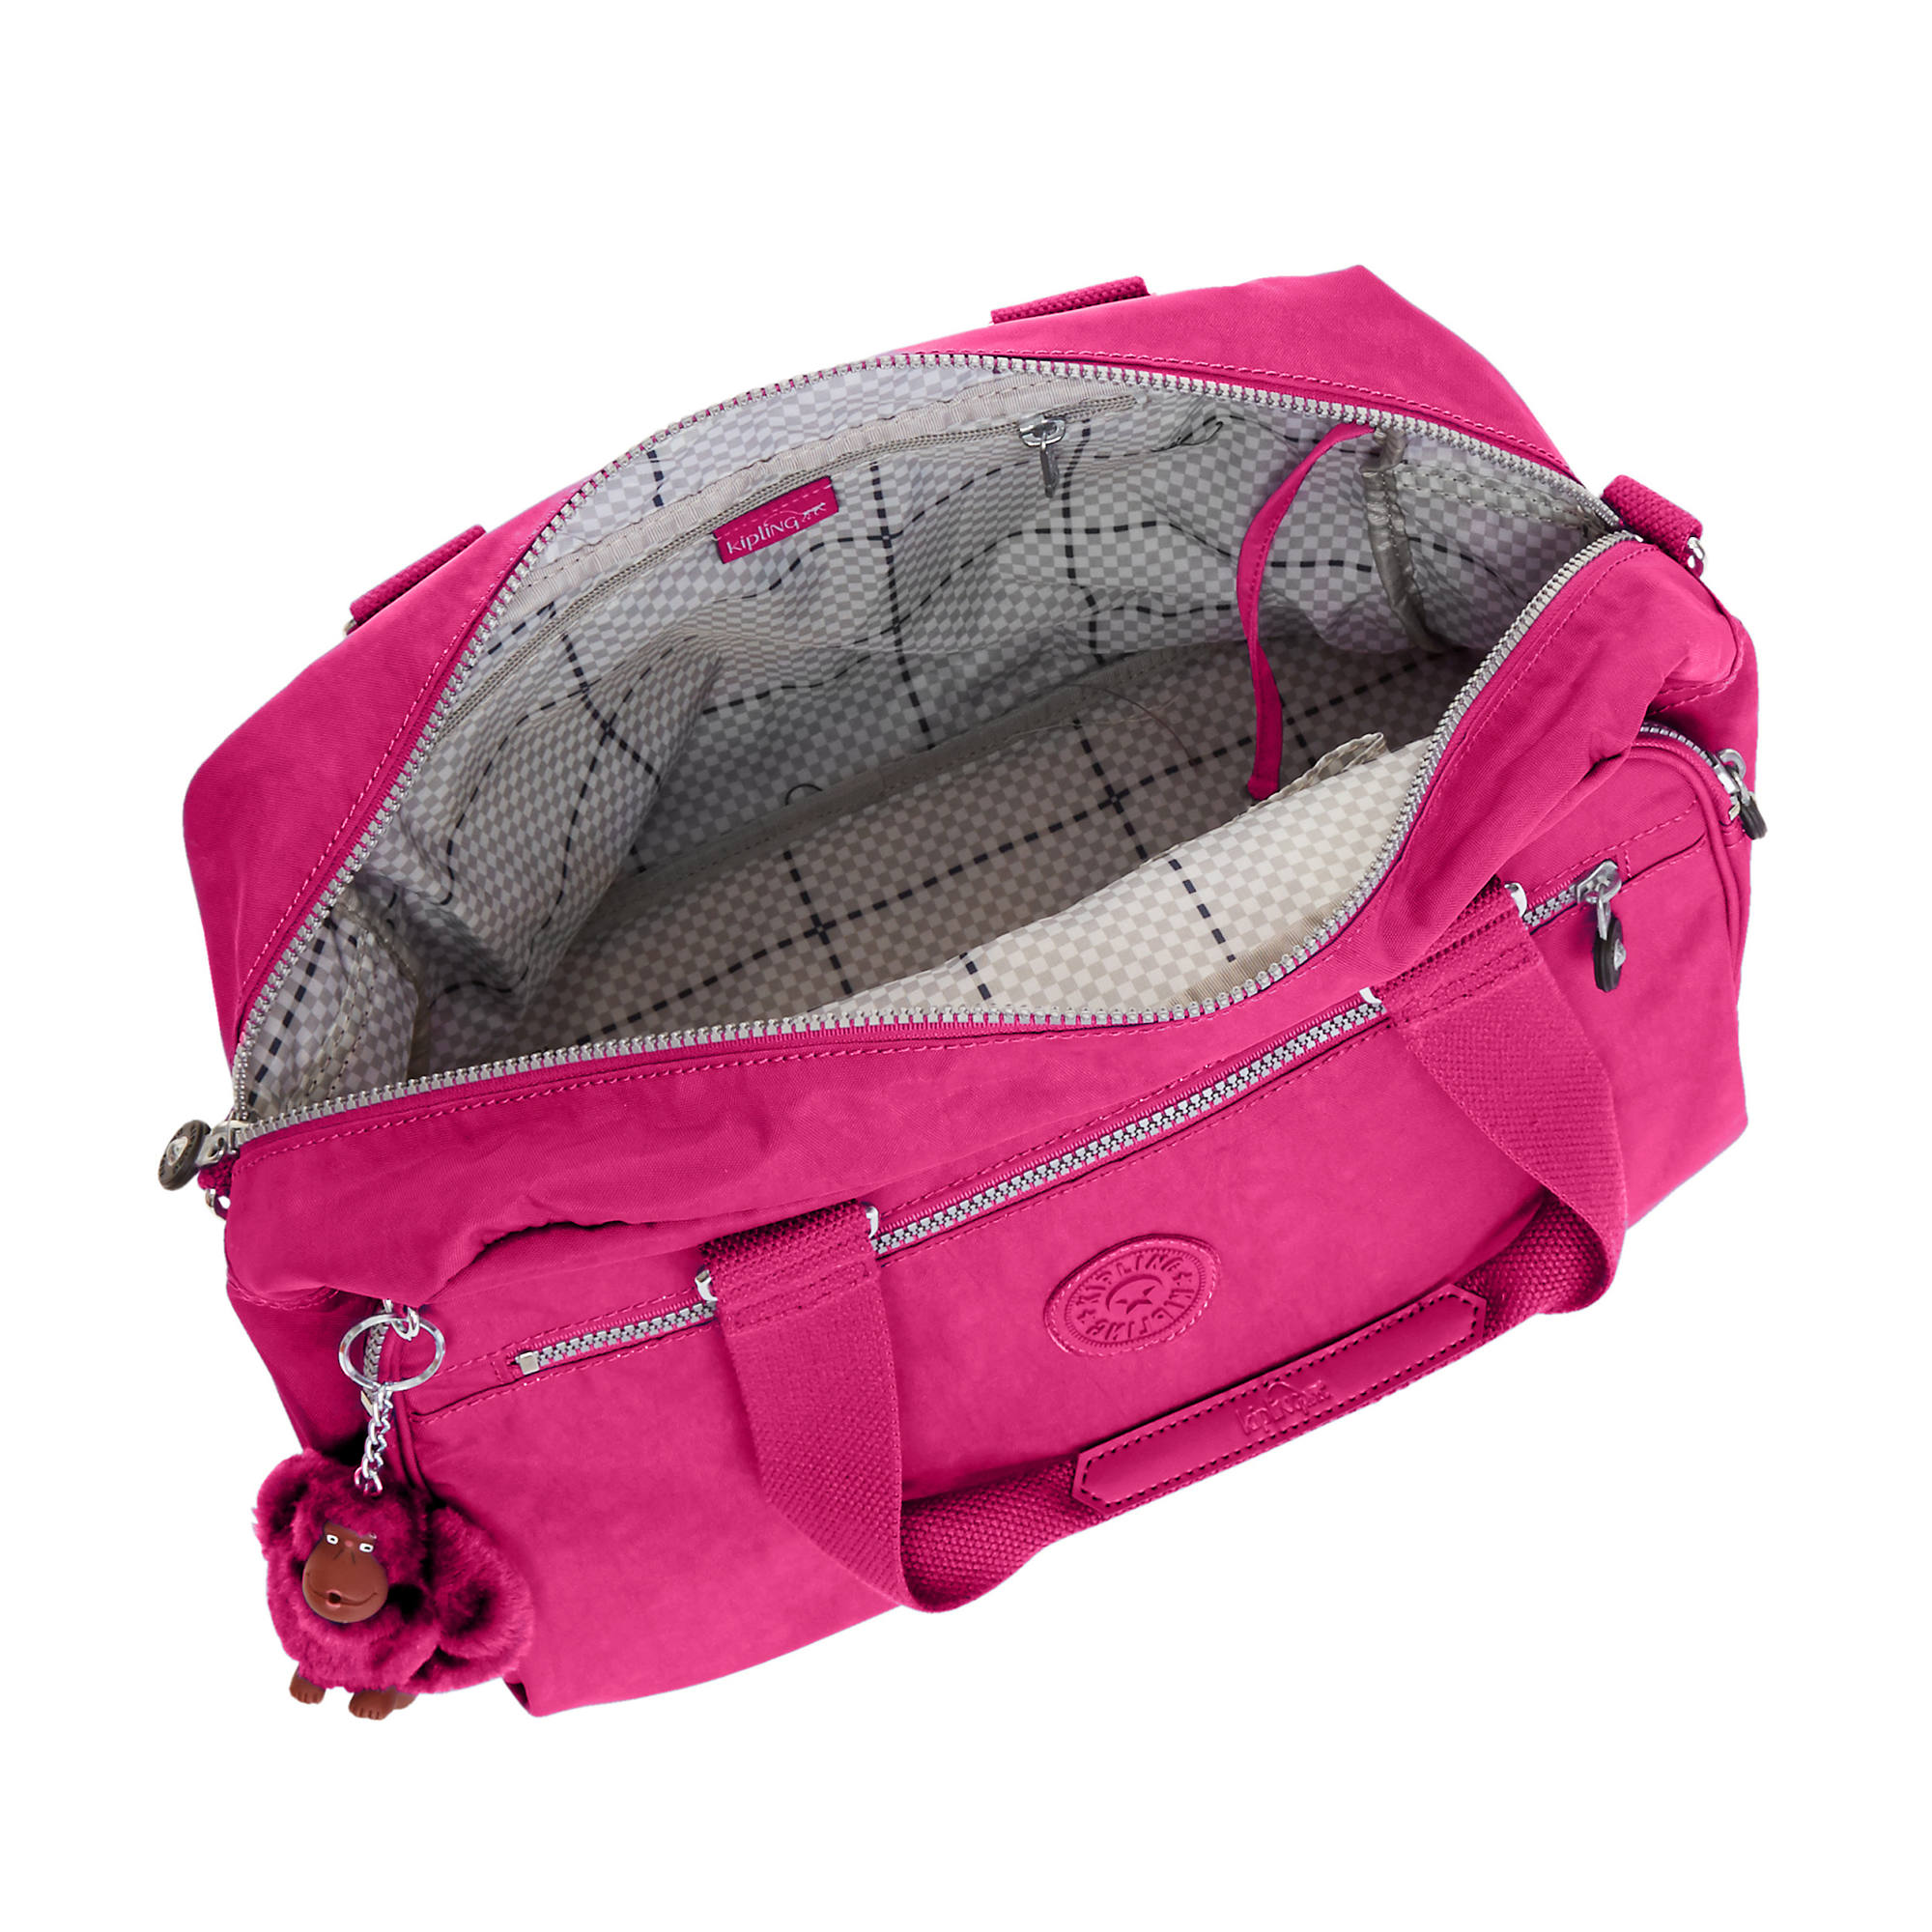 Kipling New Weekend Travel Bag | eBay